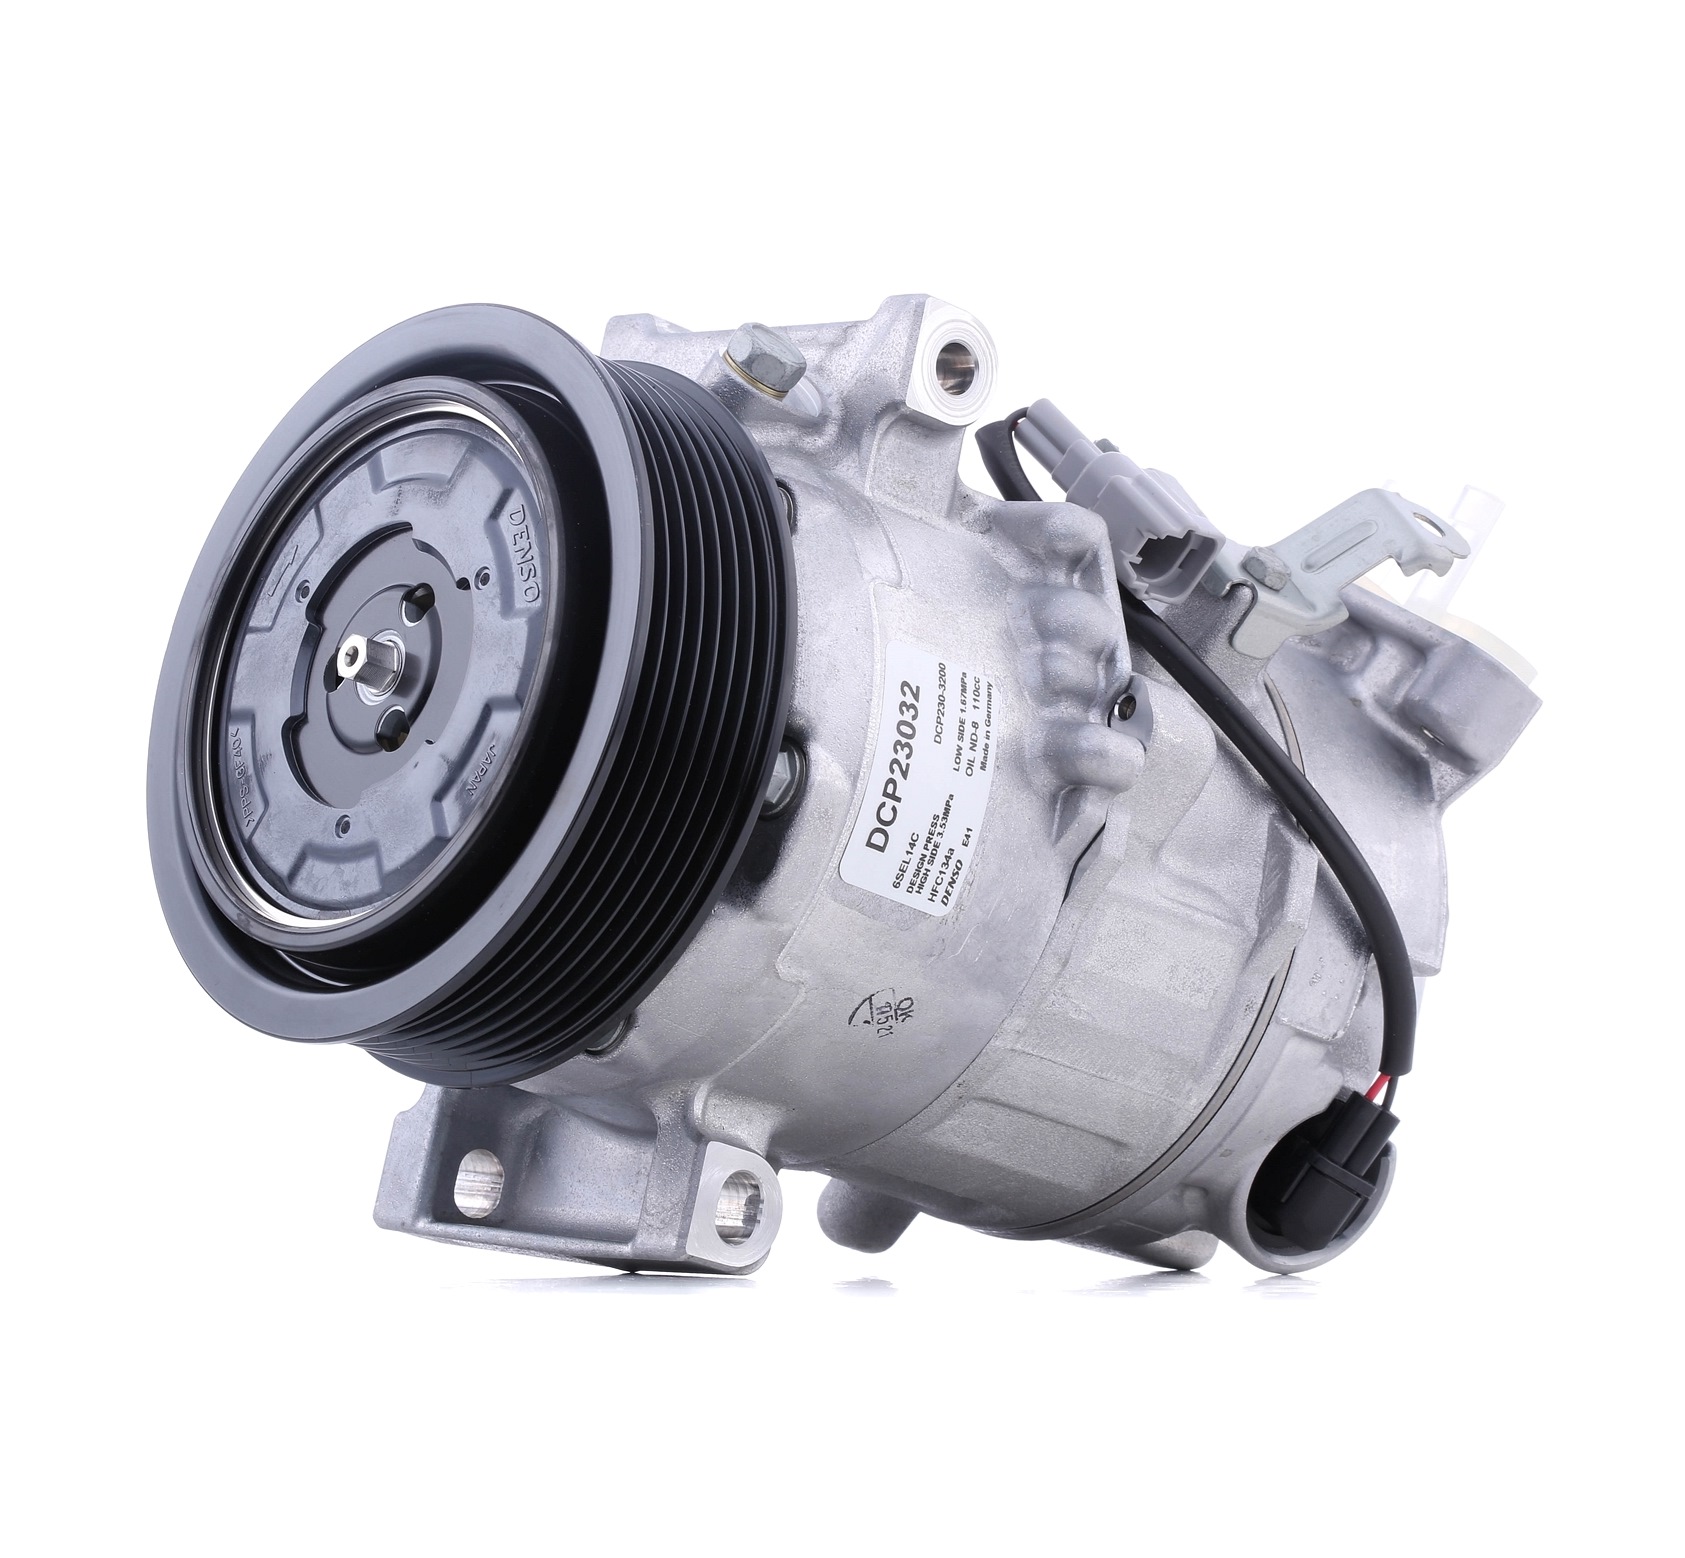 Image of DENSO Compressore Aria Condizionata RENAULT DCP23032 7711497568,8200958328 Compressore Climatizzatore,Compressore Clima,Compressore, Climatizzatore